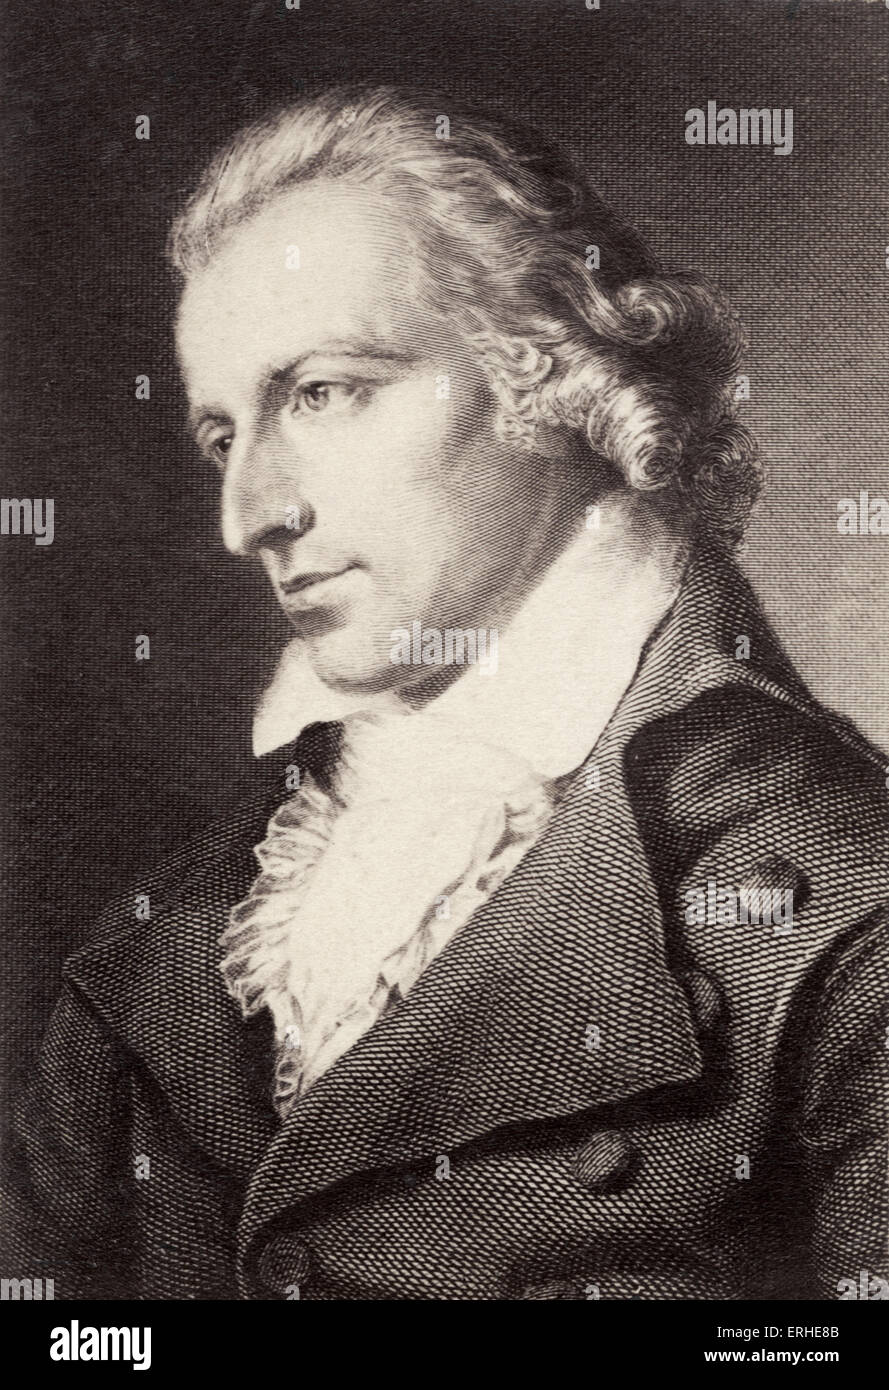 Friedrich von Schiller, portrait. German 18th-century dramatist, poet, and literary theorist, 1759-1805 Stock Photo